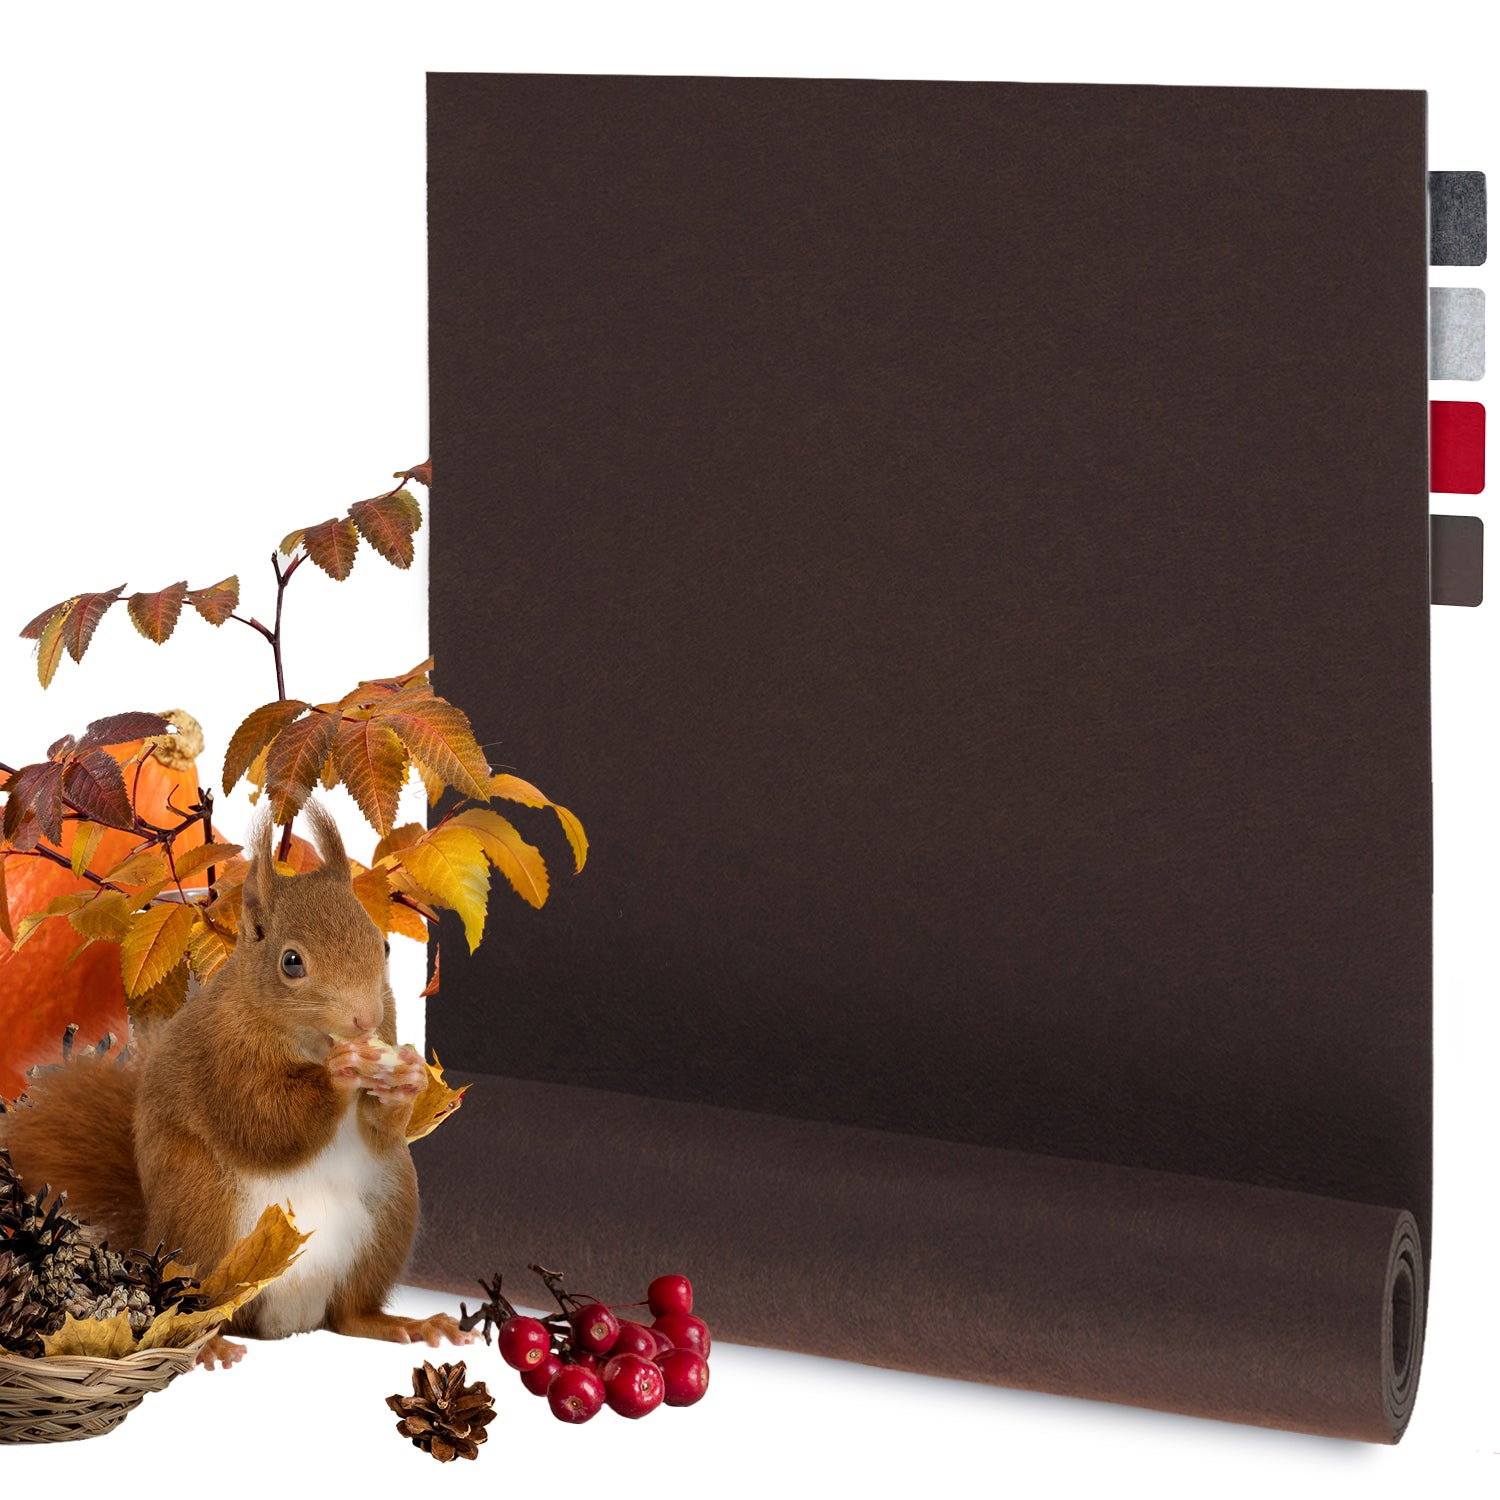 Herbstszene mit Eichhörnchen und Rollenprodukt in Naturtönen